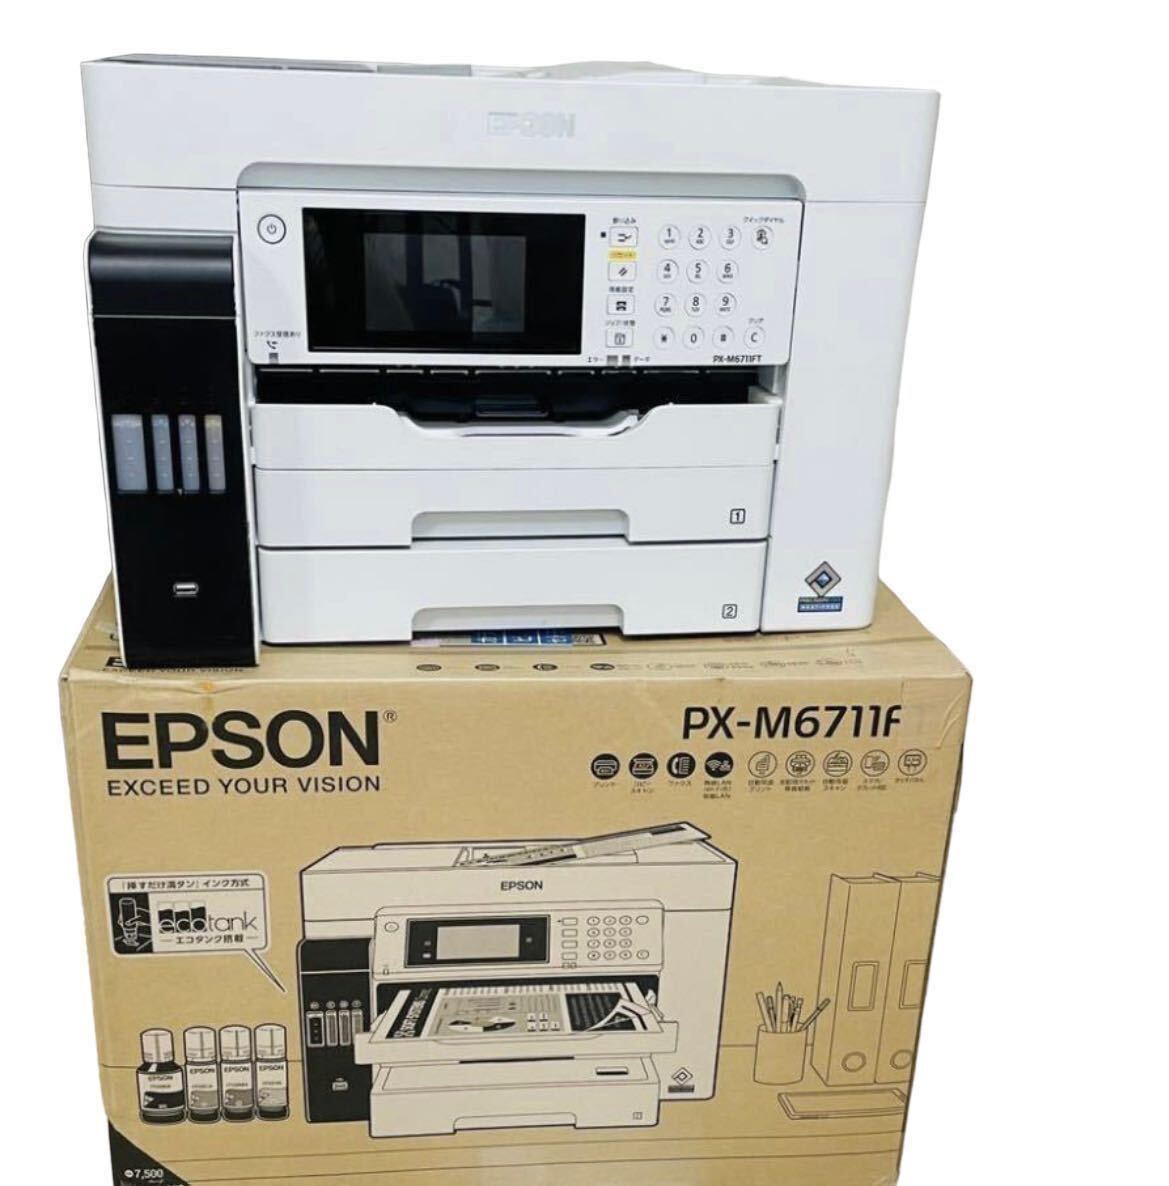 EPSON/エプソン PX-M6711FT A3対応ビジネスインクジェット複合機 エコタンク搭載モデル  の画像4